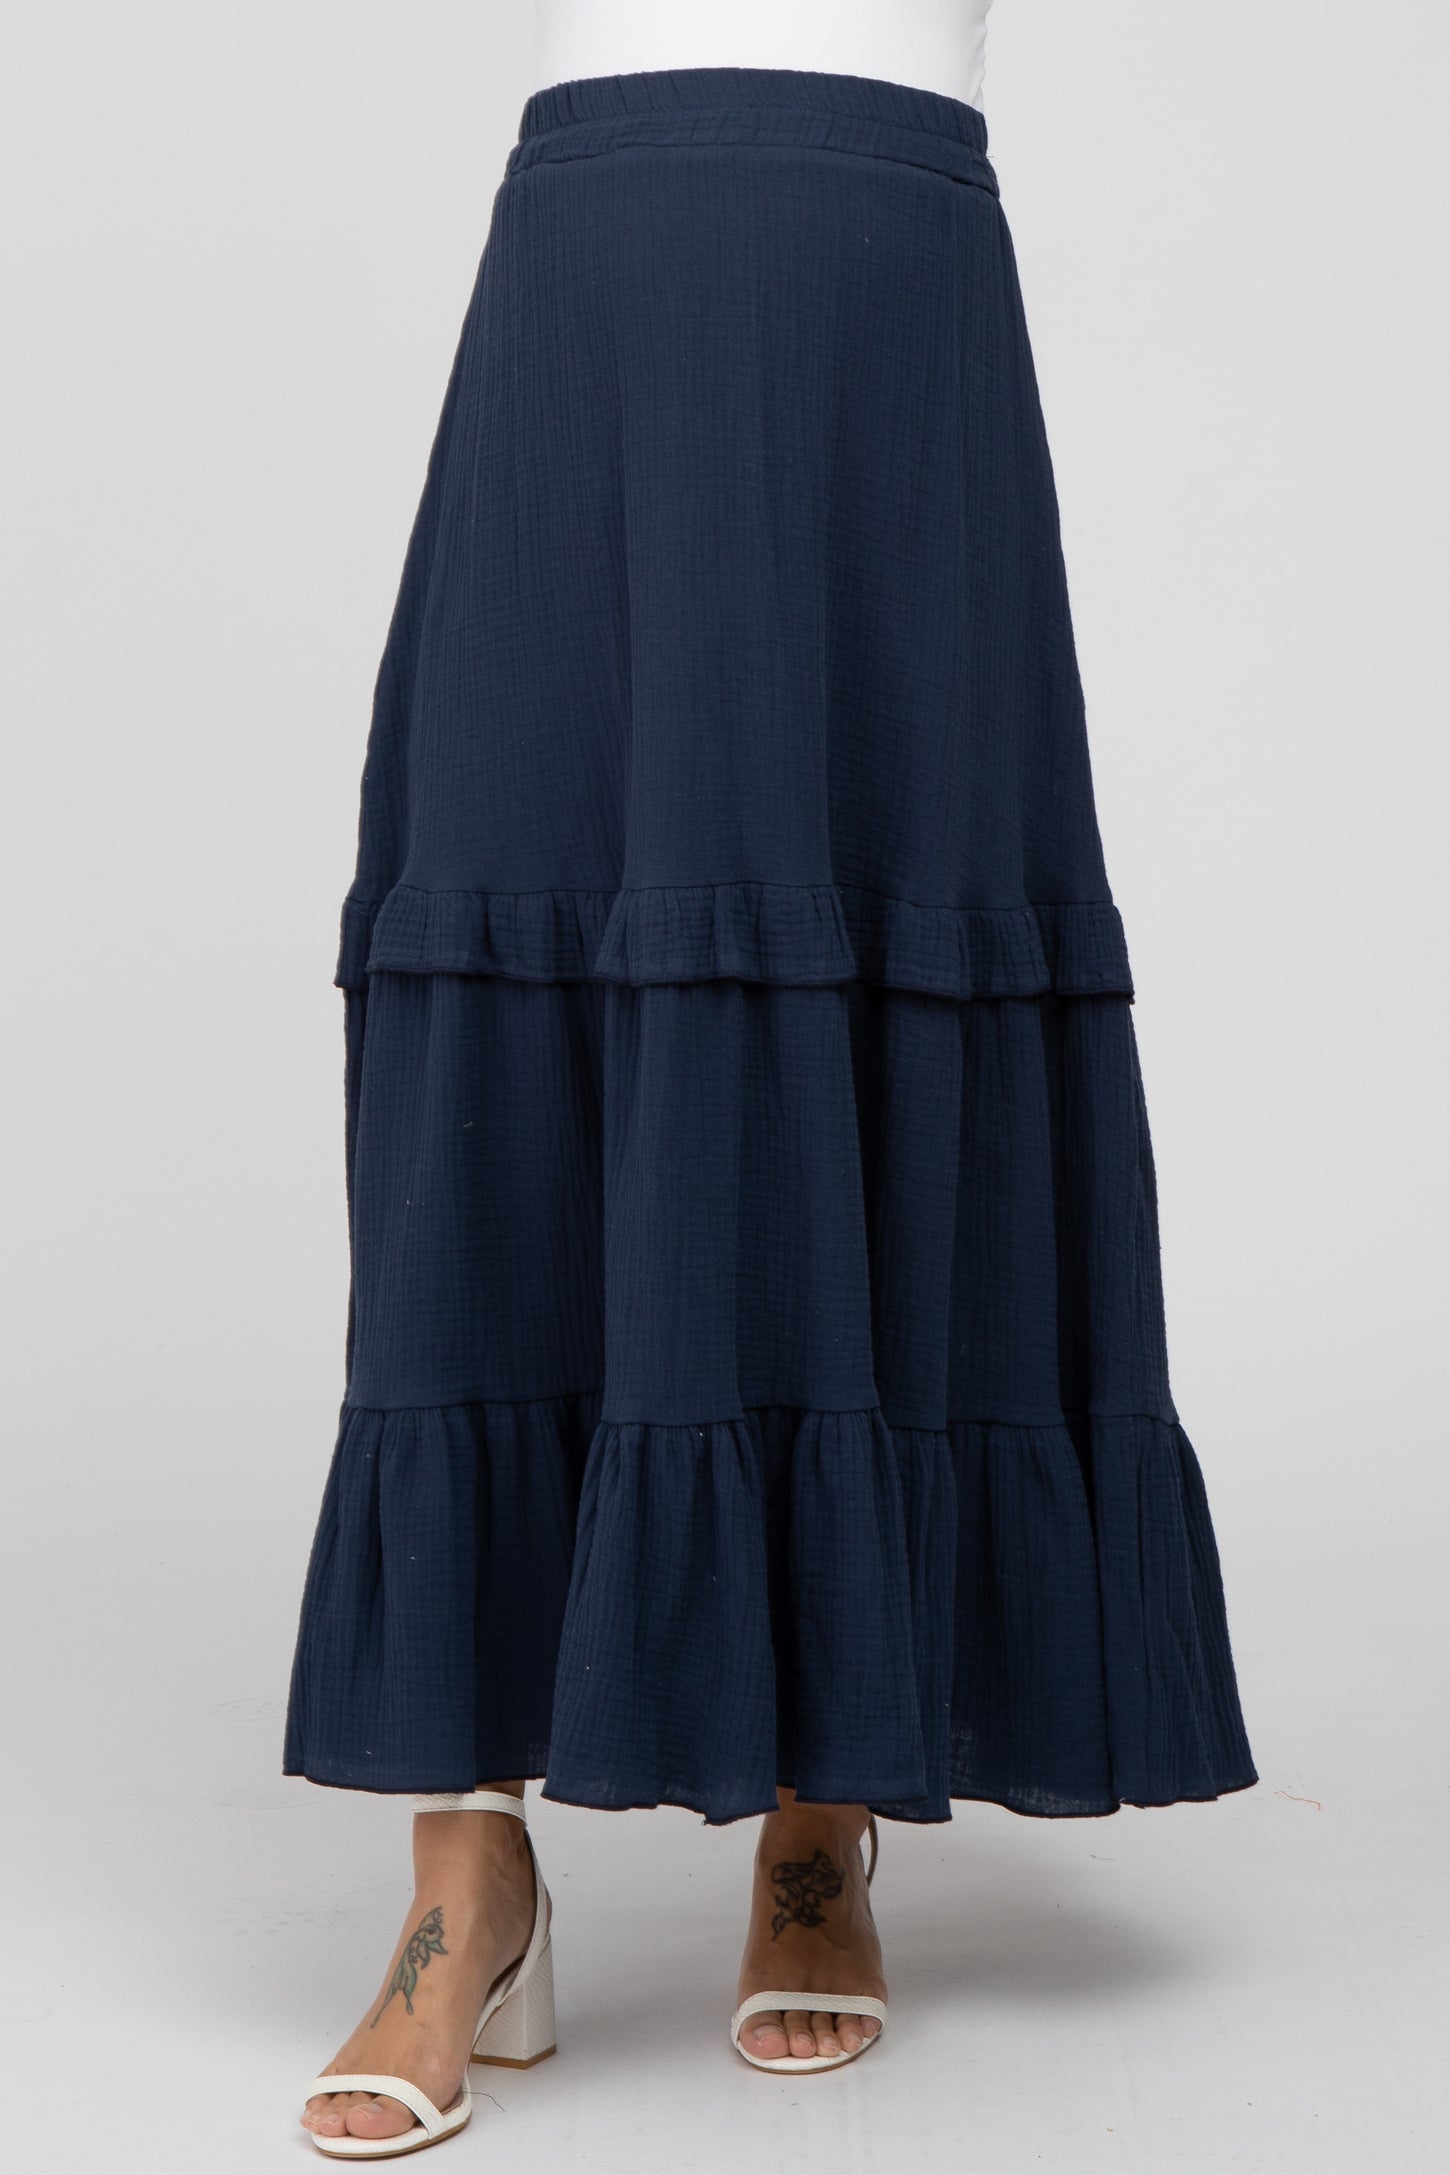 Navy Blue Cotton Gauze Ruffle Tiered Maternity Maxi Skirt – PinkBlush